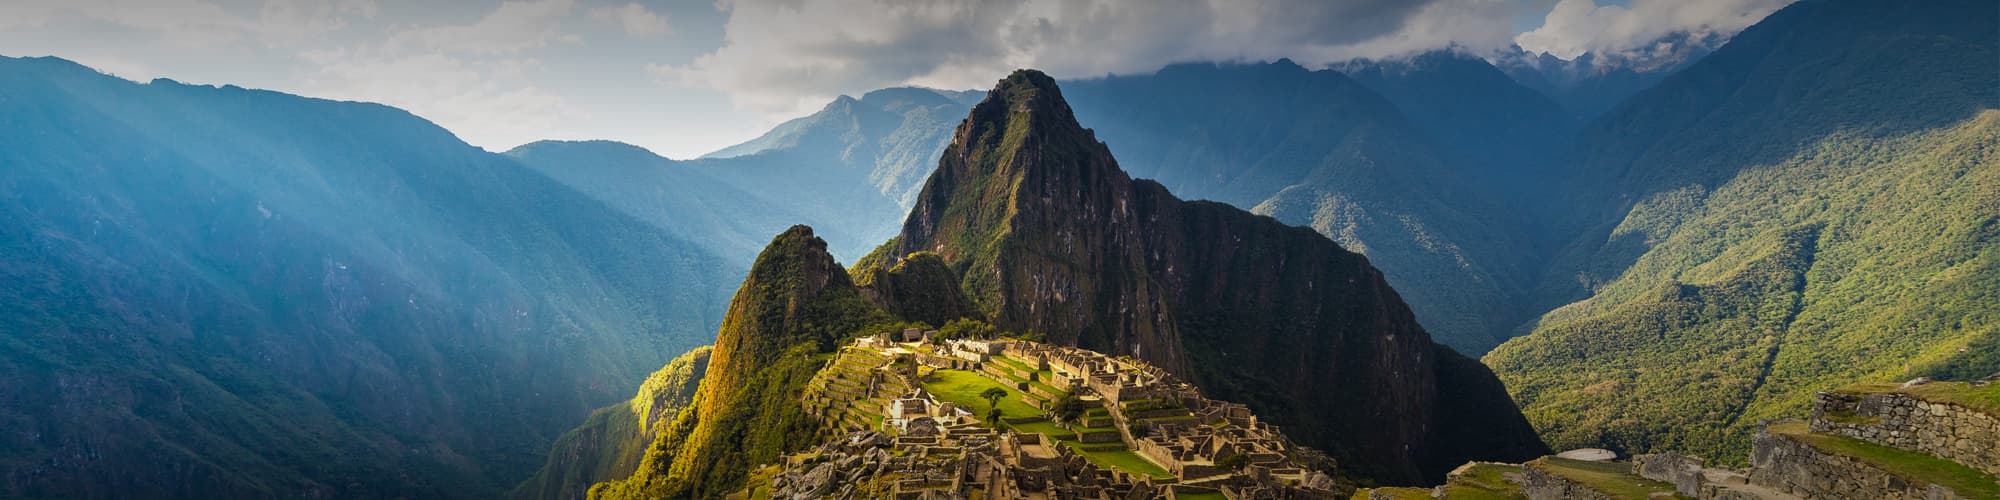 Randonnée au Pérou © fbxx